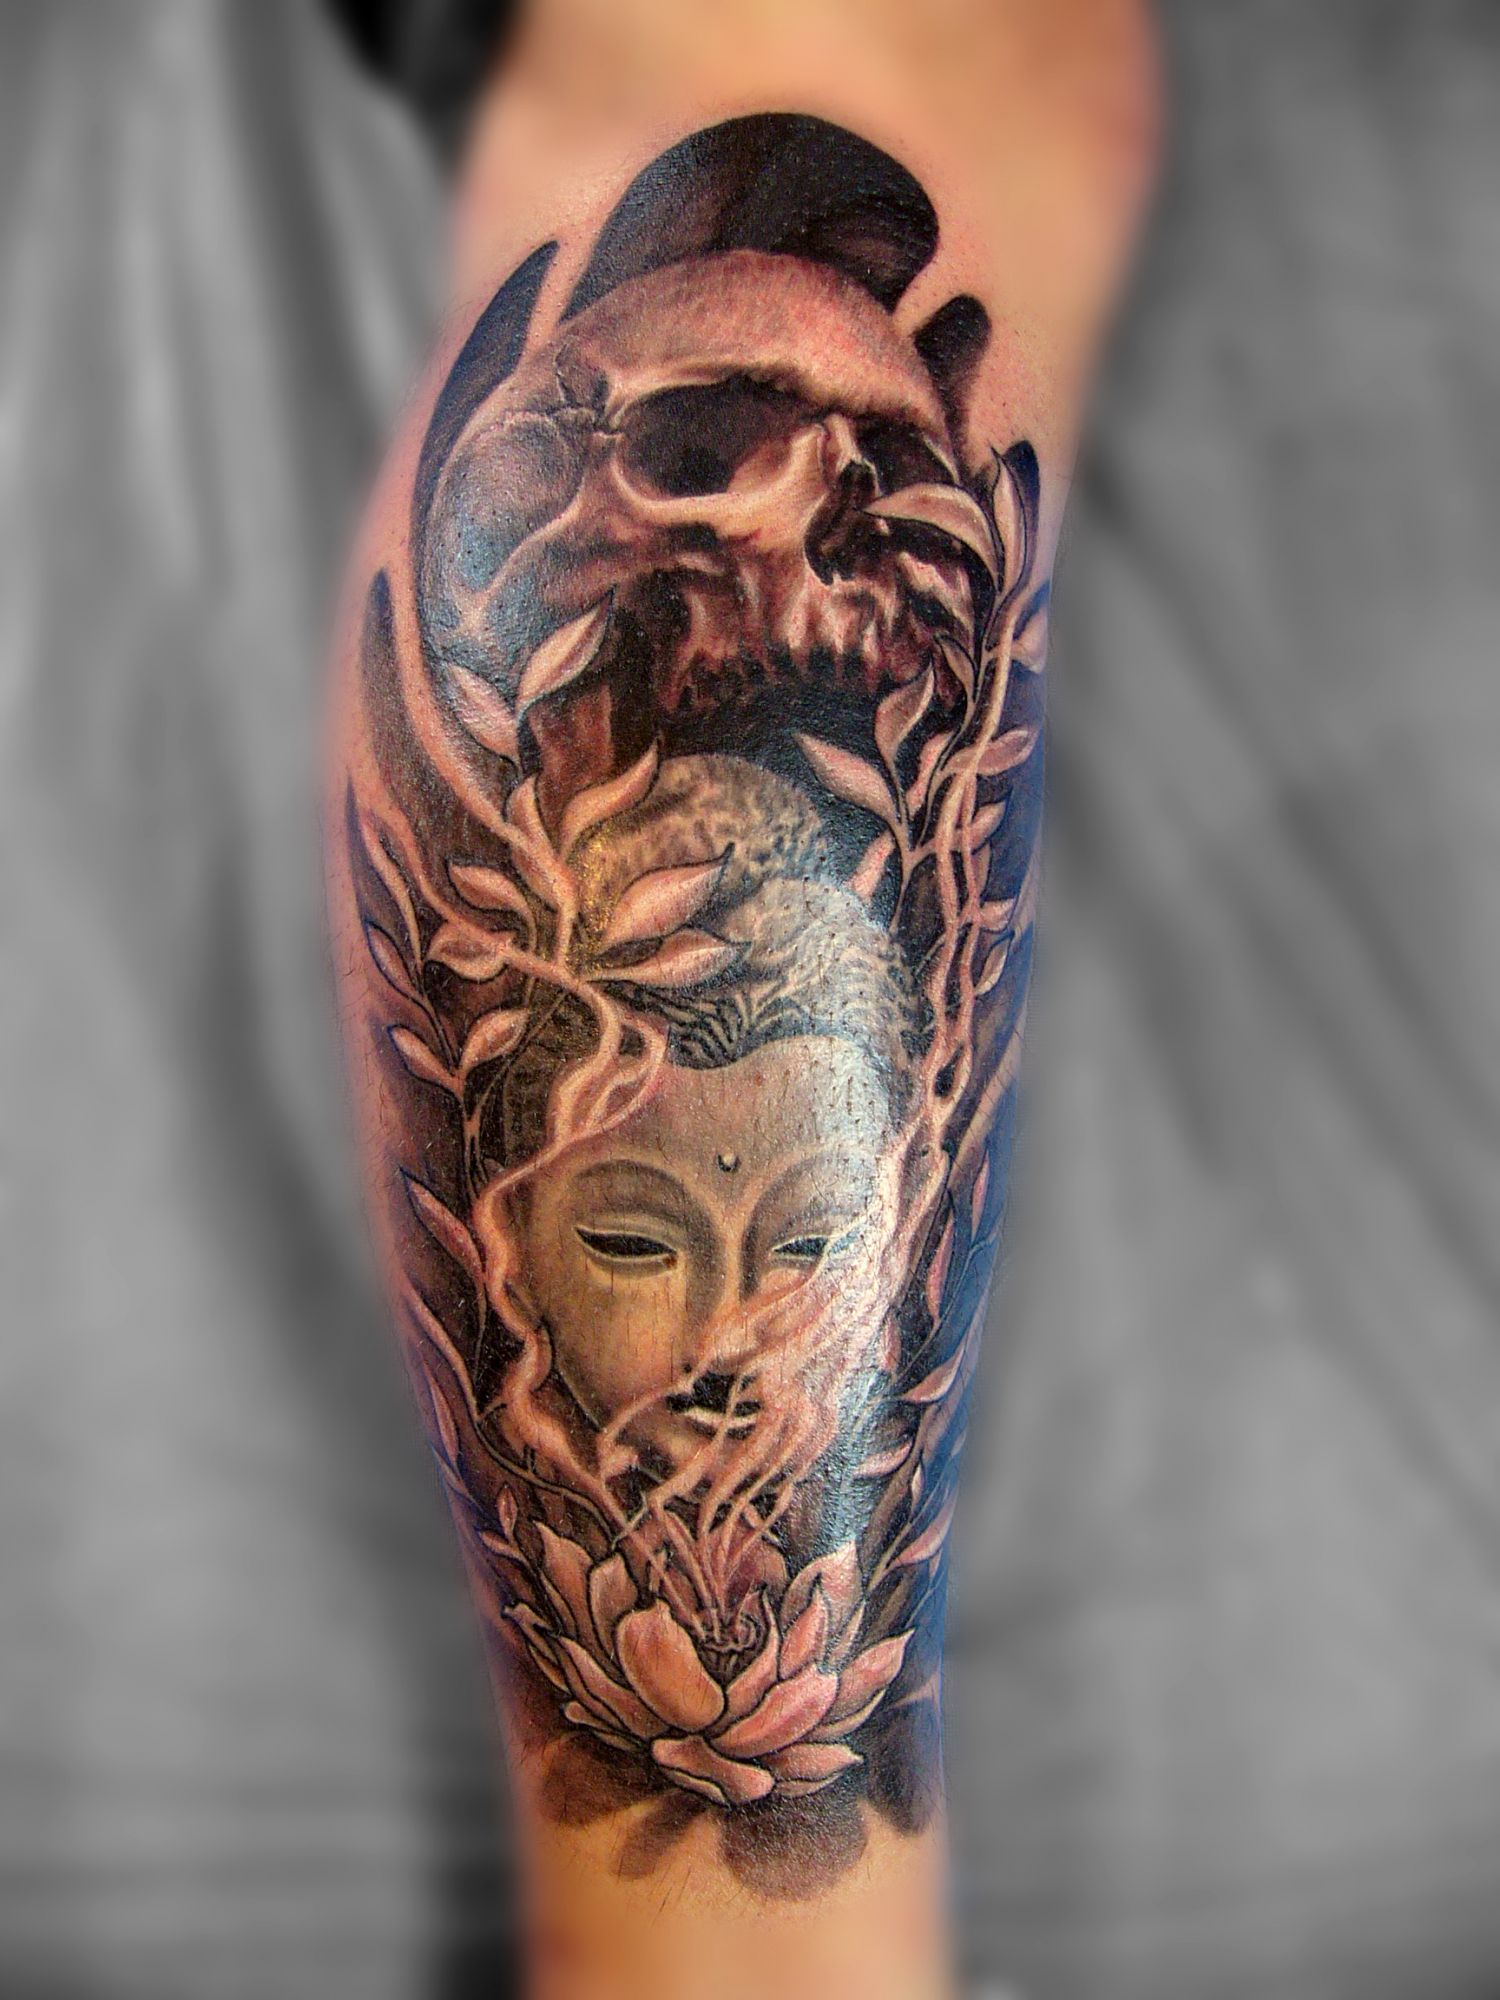 Fekete fehér tetoválás, Koponya tetoválás, Vádli tetoválás, Virág tetoválás